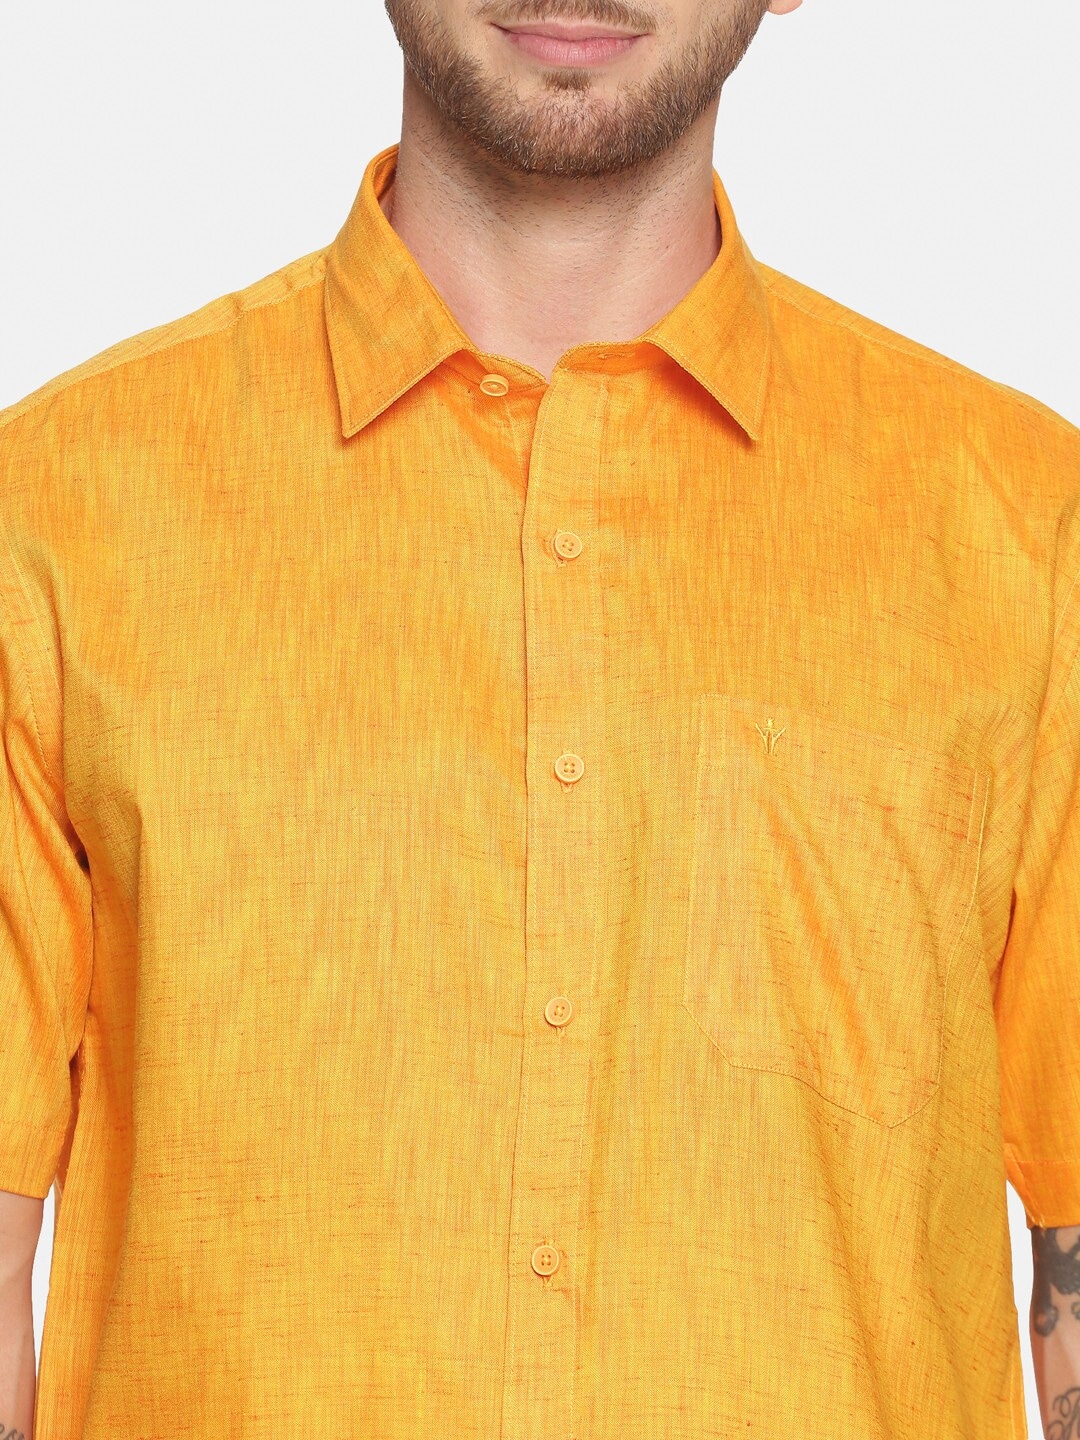 RAMRAJ COTTON Men Yellow White Solid Shirt with Dhoti